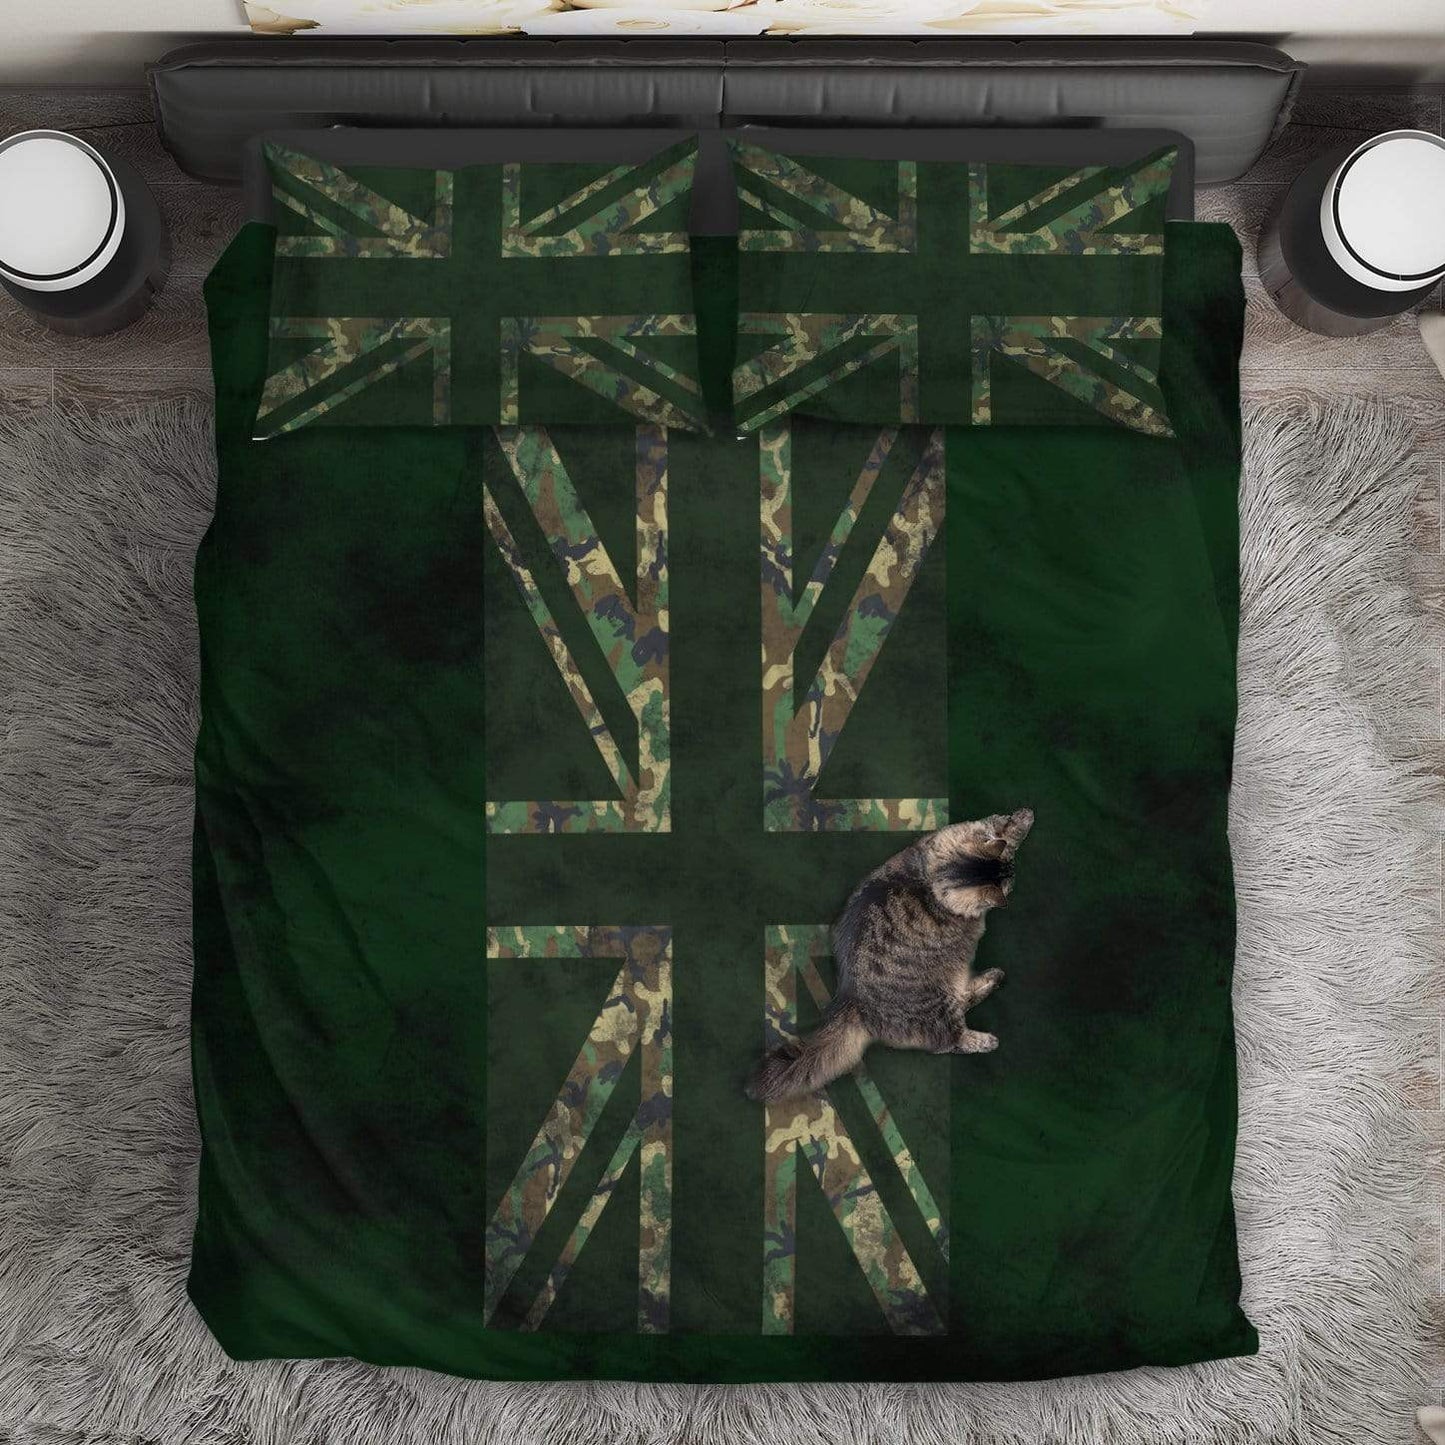 duvet Bedding Set - Black - Union Jack Camouflage Green Rugged / Queen/Full Union Jack Camouflage Duvet Cover + 2 Pillow Cases